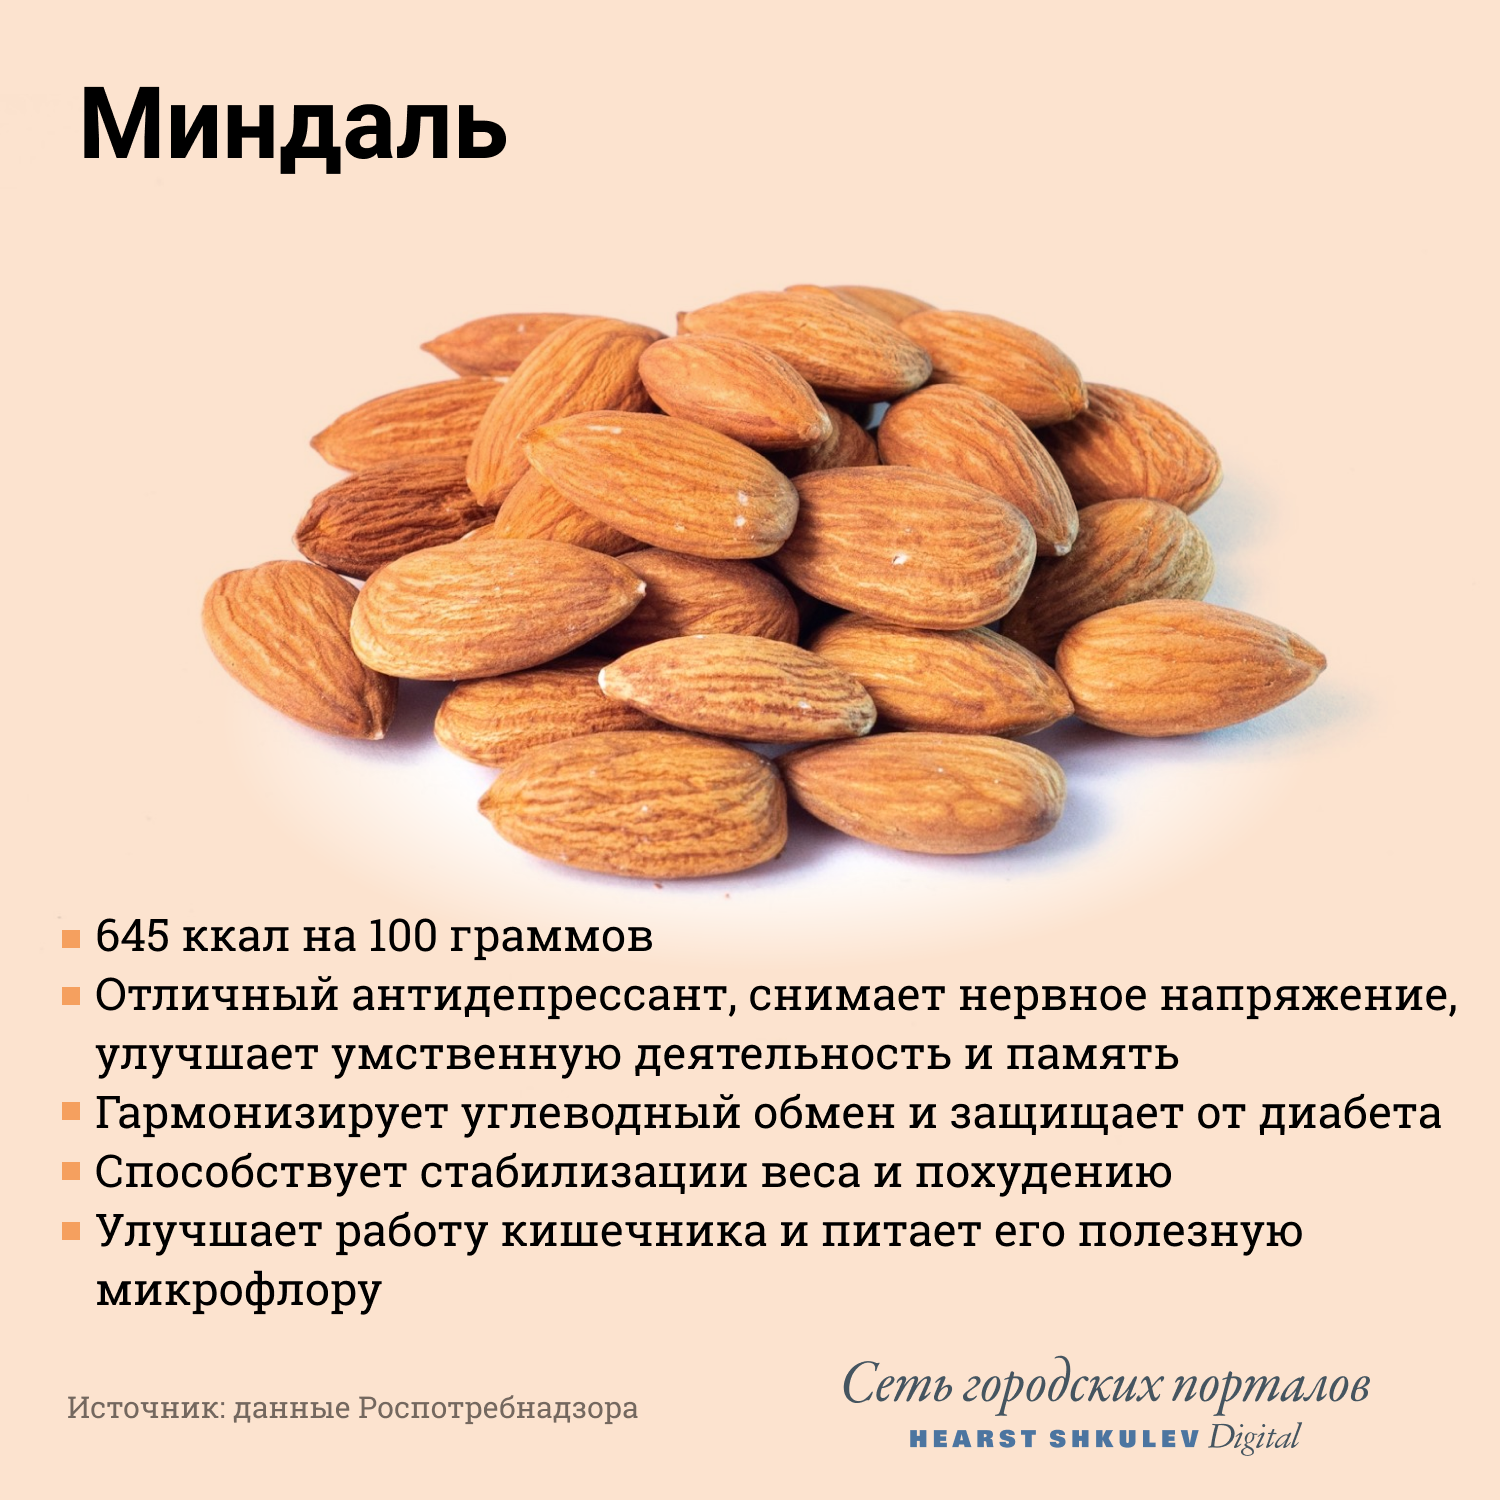 Миндаль при диабете. Миндаль орех калорийность 1 шт. Чем полезен миндаль. Чем полезны орехи. Самые полезные орехи.